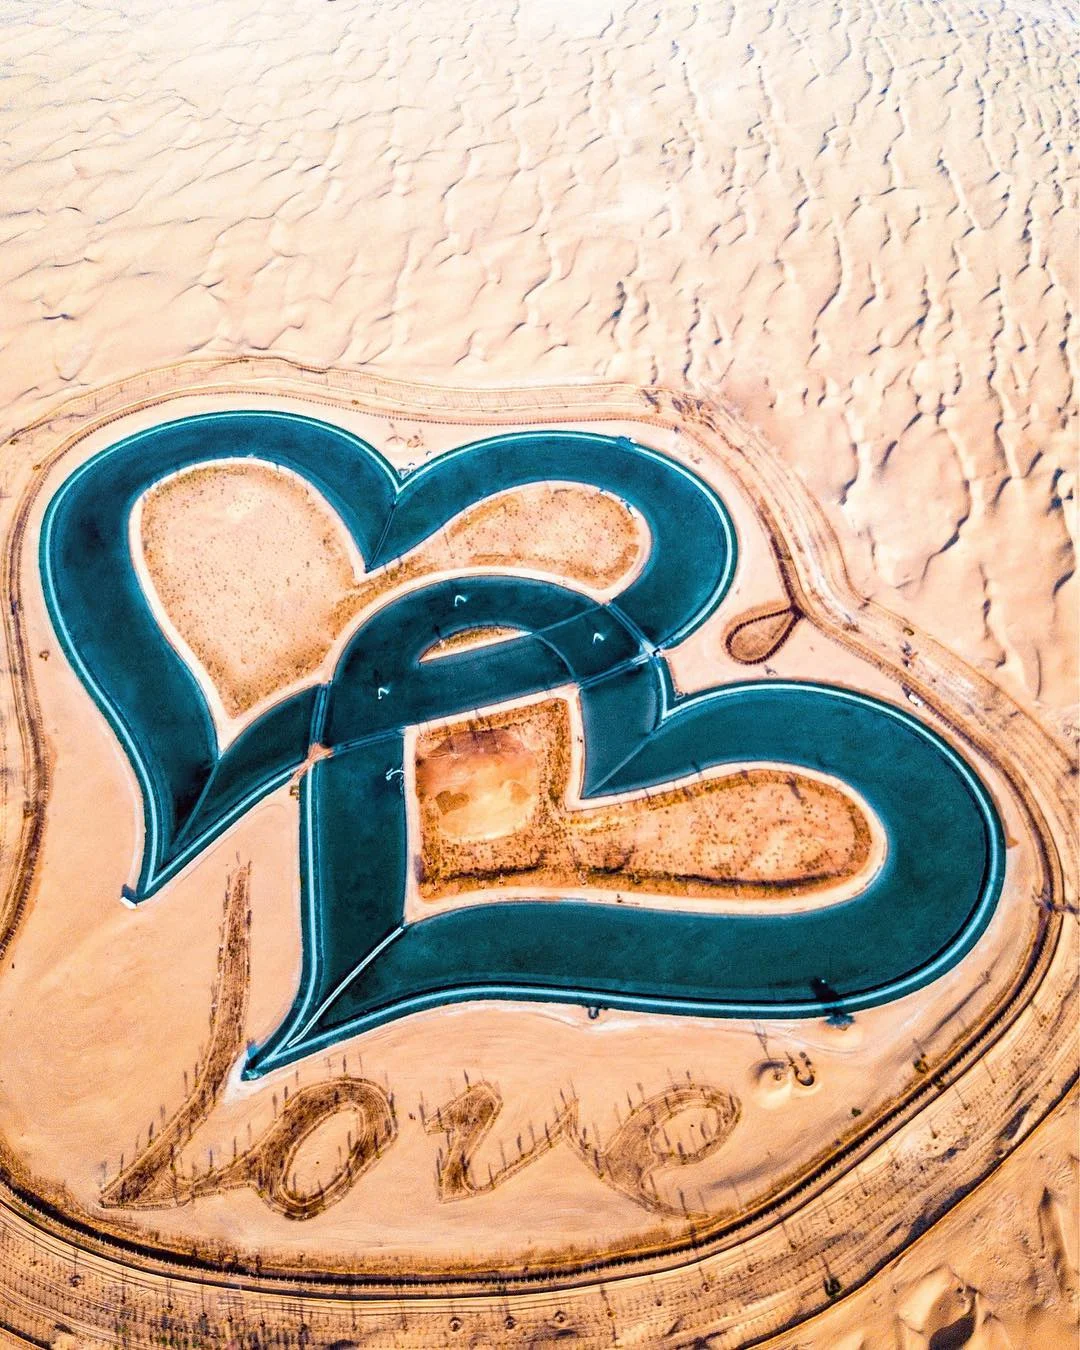 У Дубаї з'явилось озеро у формі переплетених сердець, яке вражає своєю красою - фото 413185